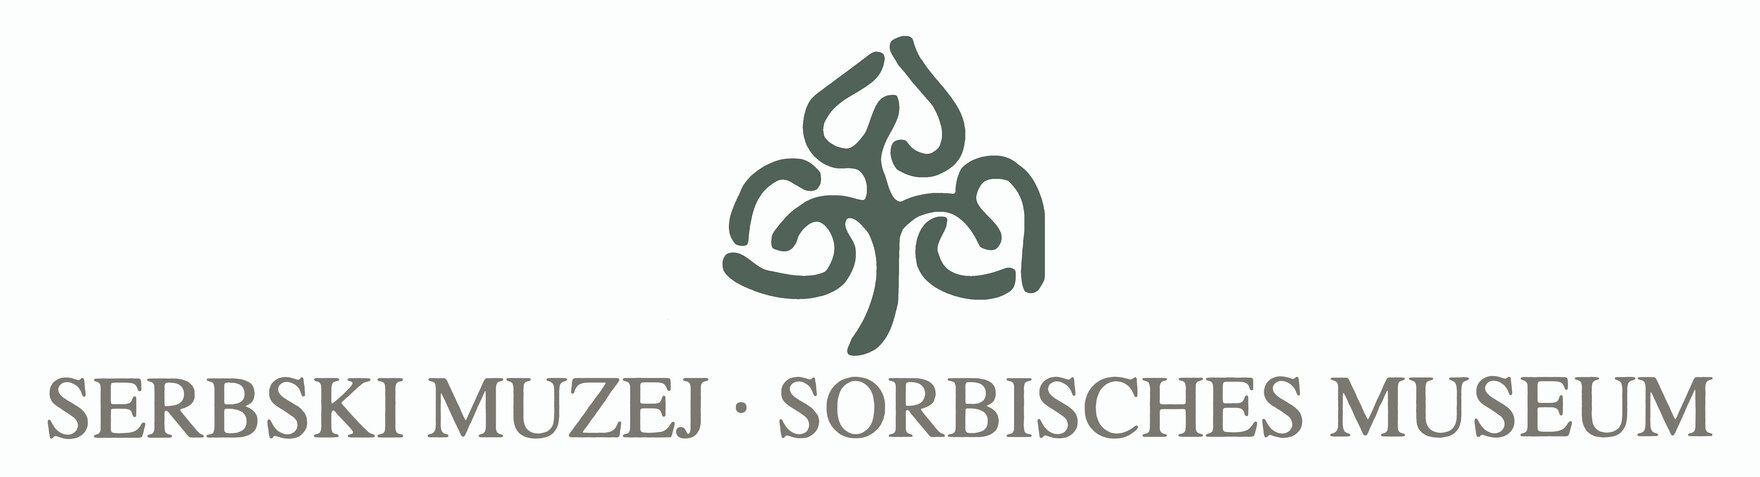 Logo Sorbisches Museum